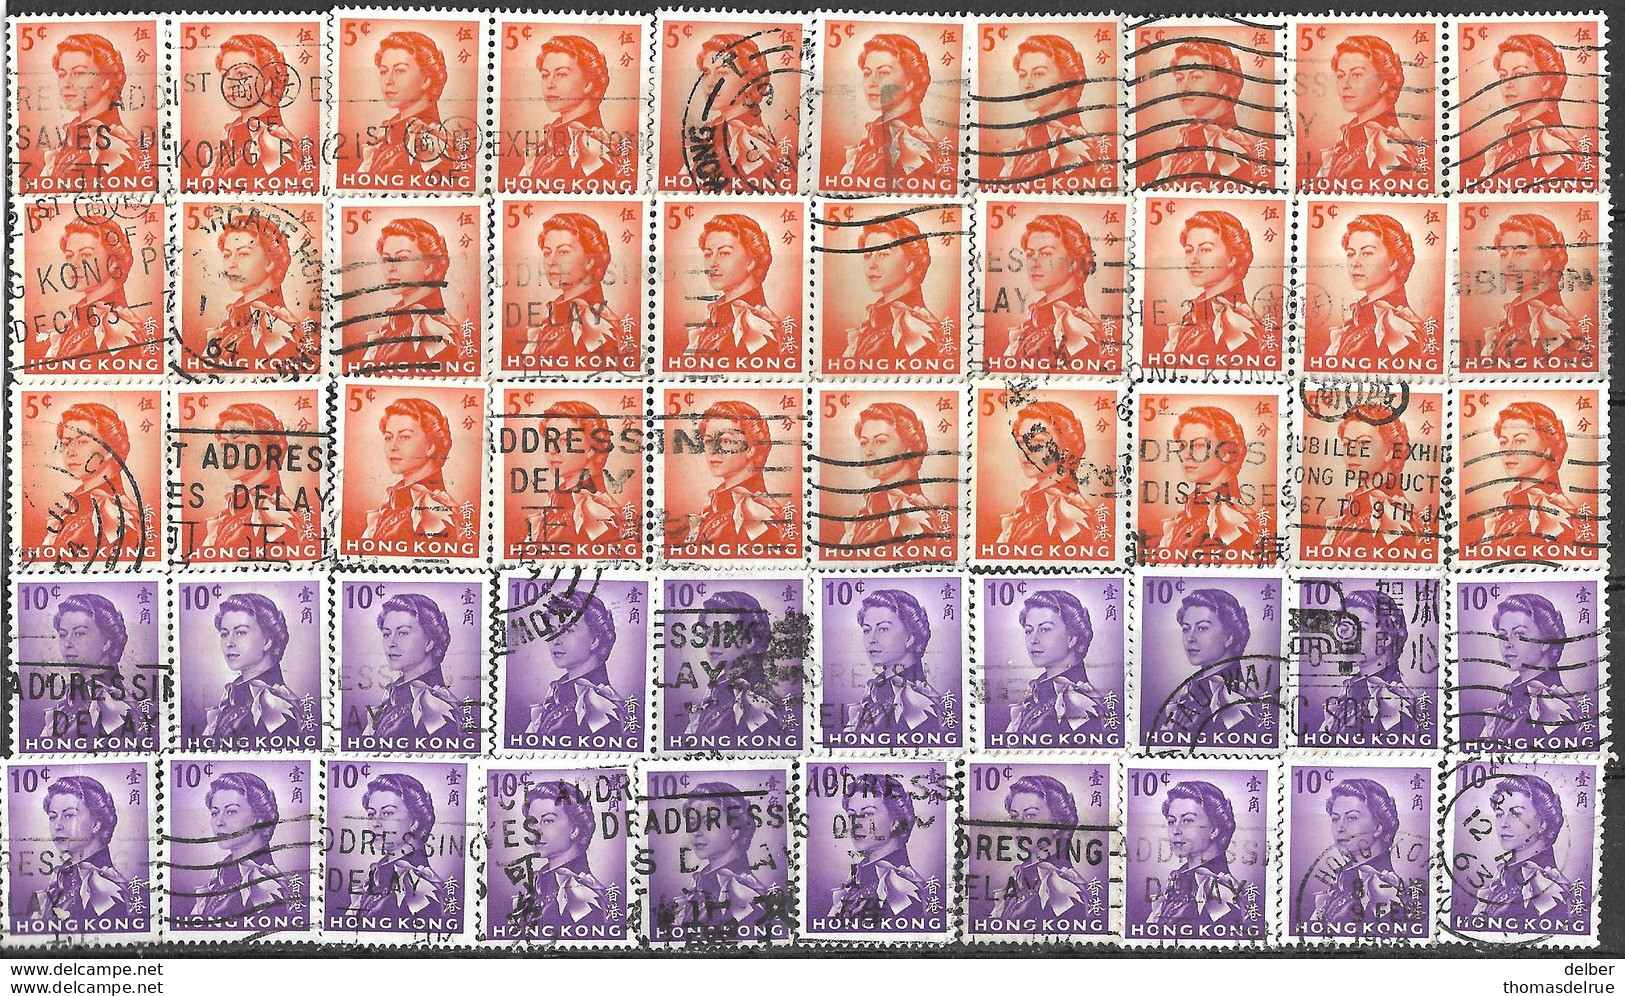 9Ab-975: Restje 50 Zegels  5 & 10ct 1962: ... Verder Uit Te Zoeken.. - Used Stamps